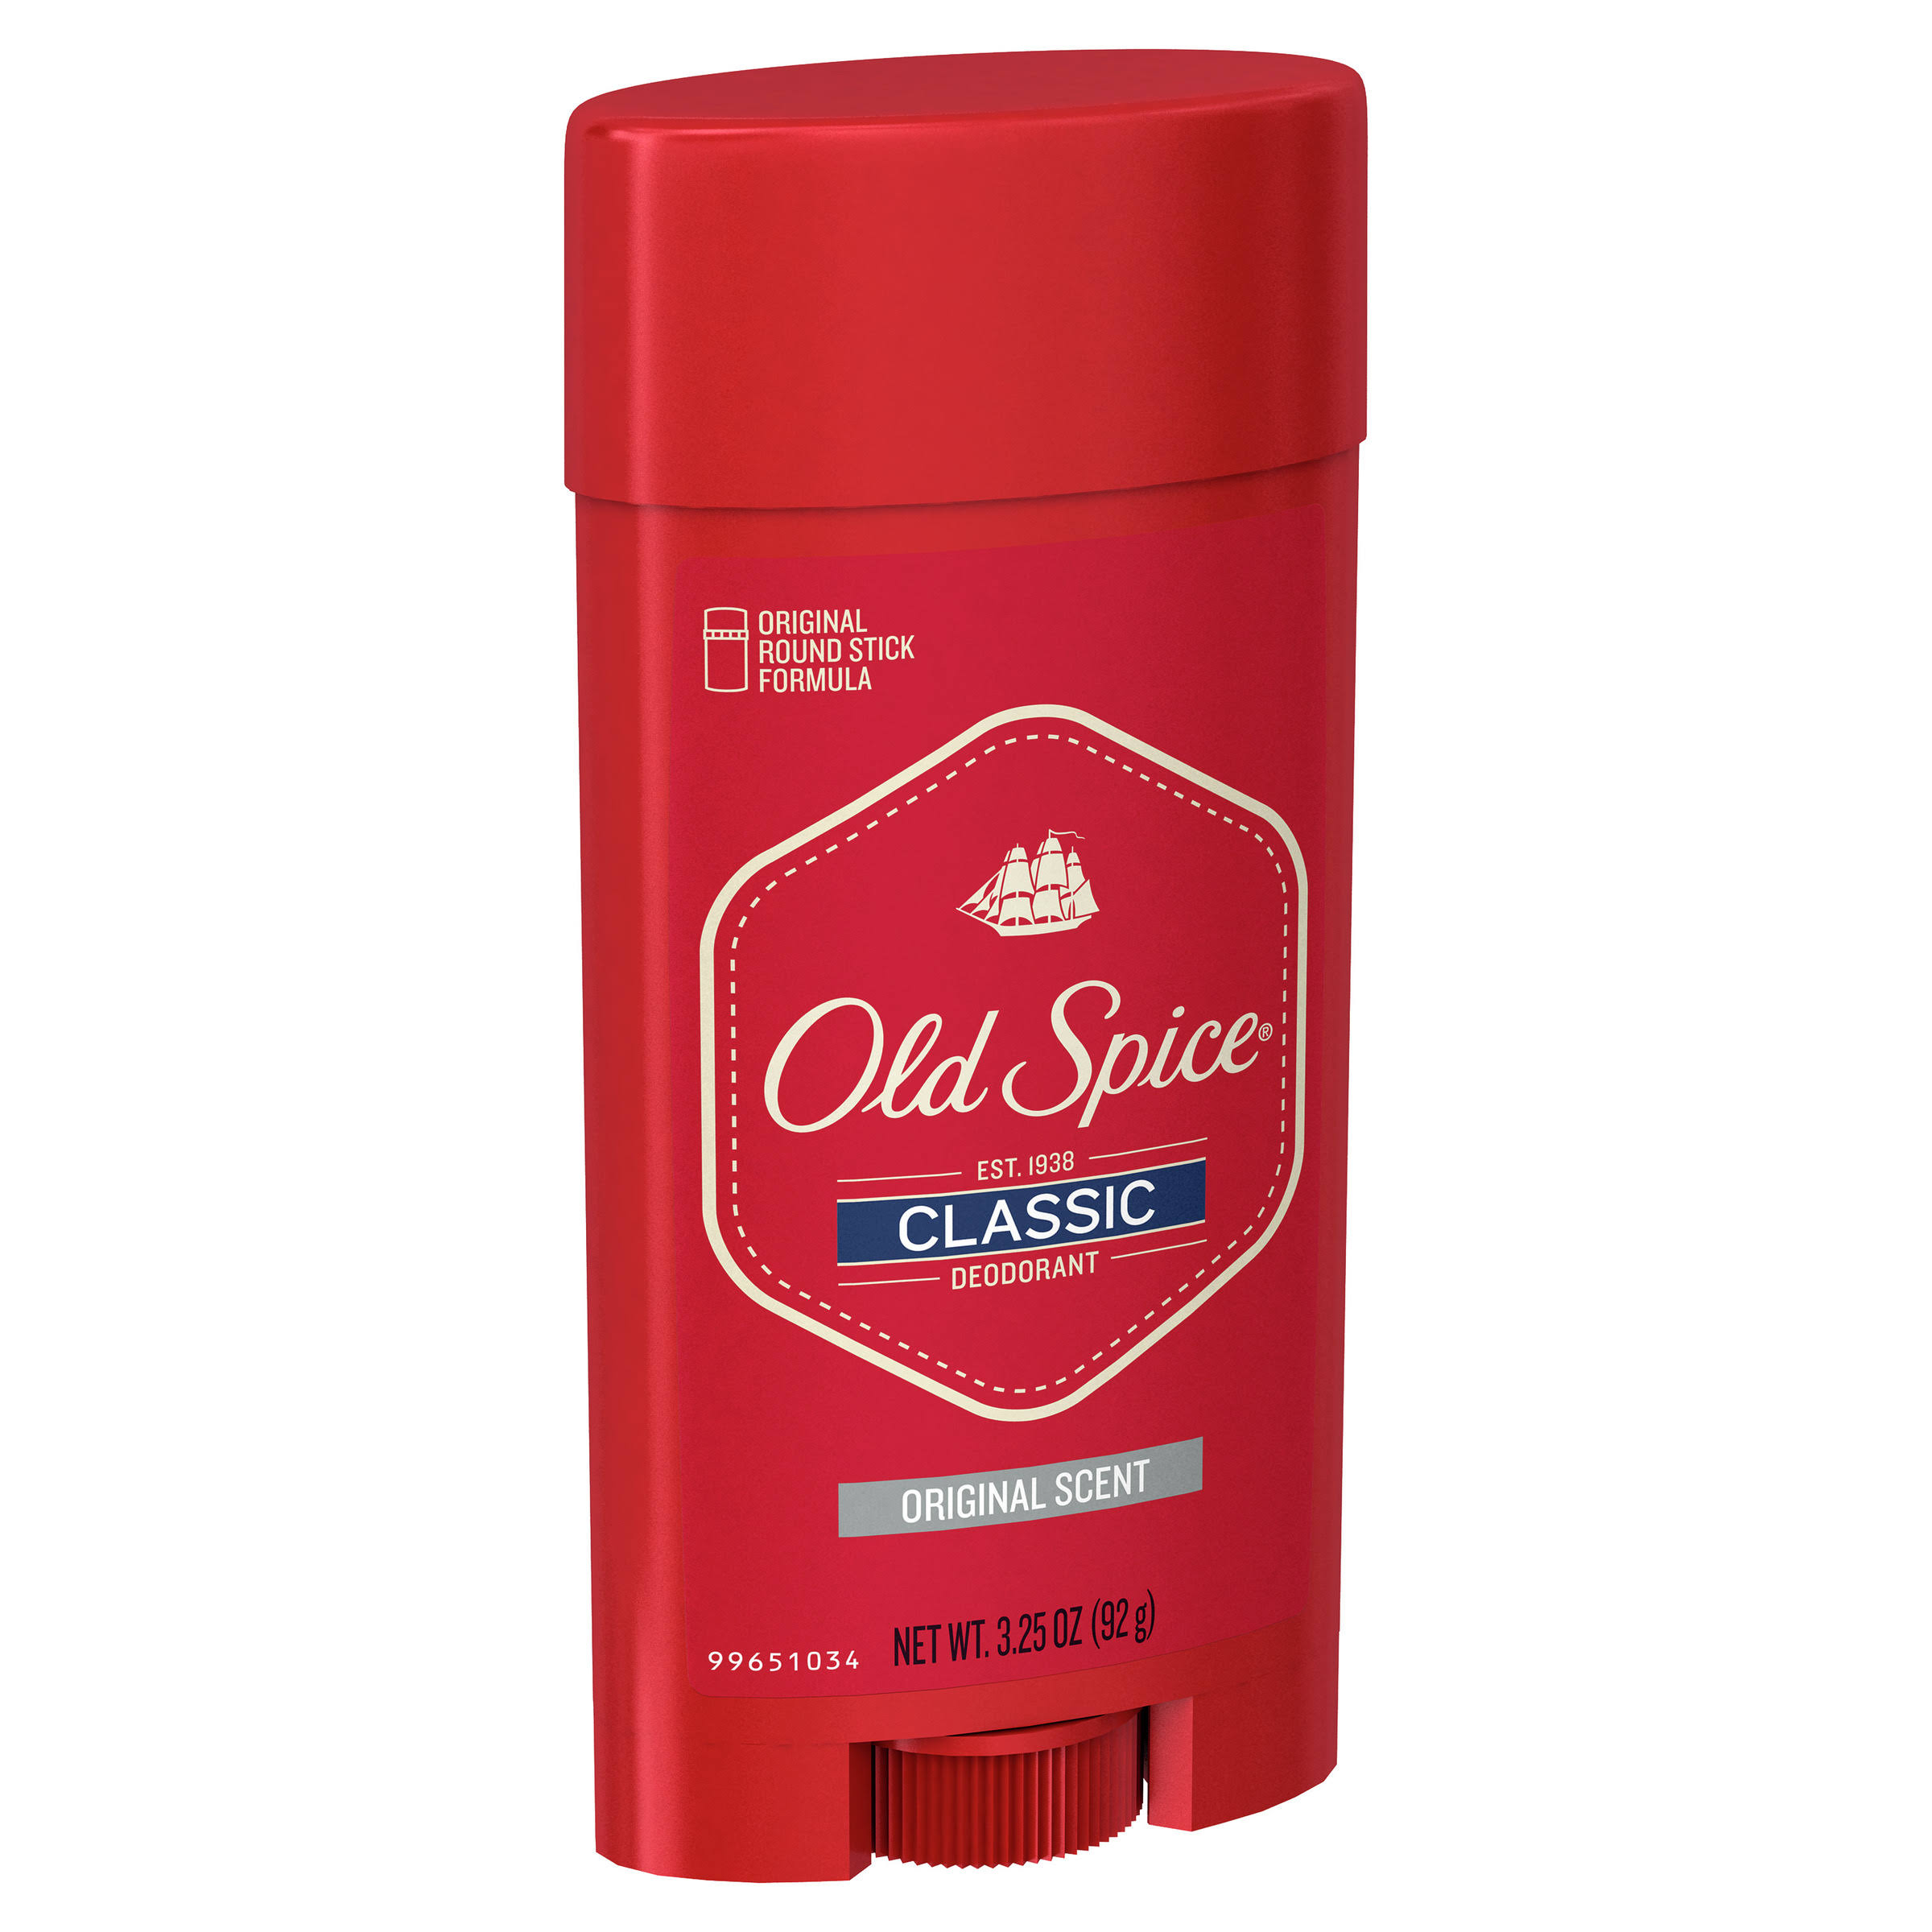 Old Spice Classic Original Scent Deodorant - 3.25oz